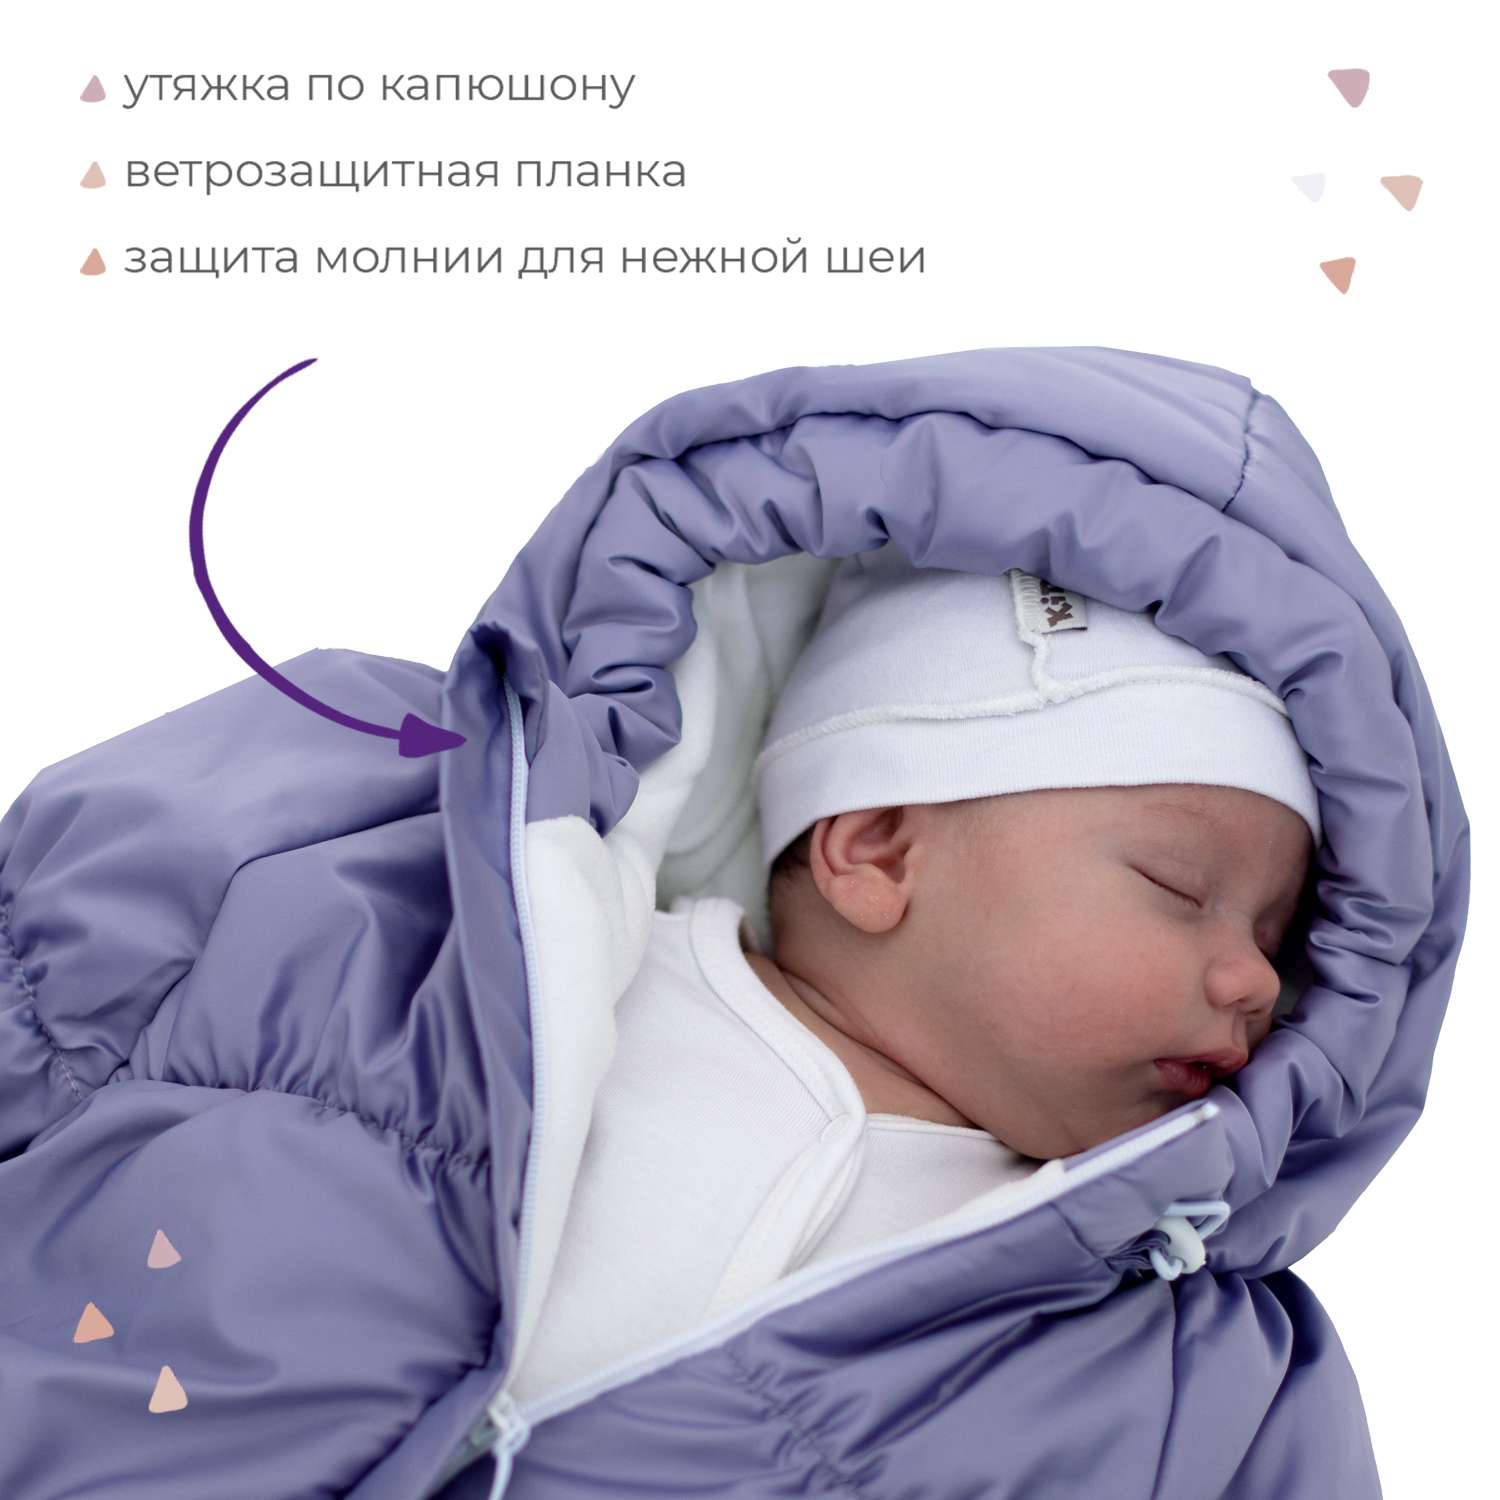 Конверт для новорожденного inlovery на выписку/в коляску «Маршмеллоу» сиреневый - фото 3